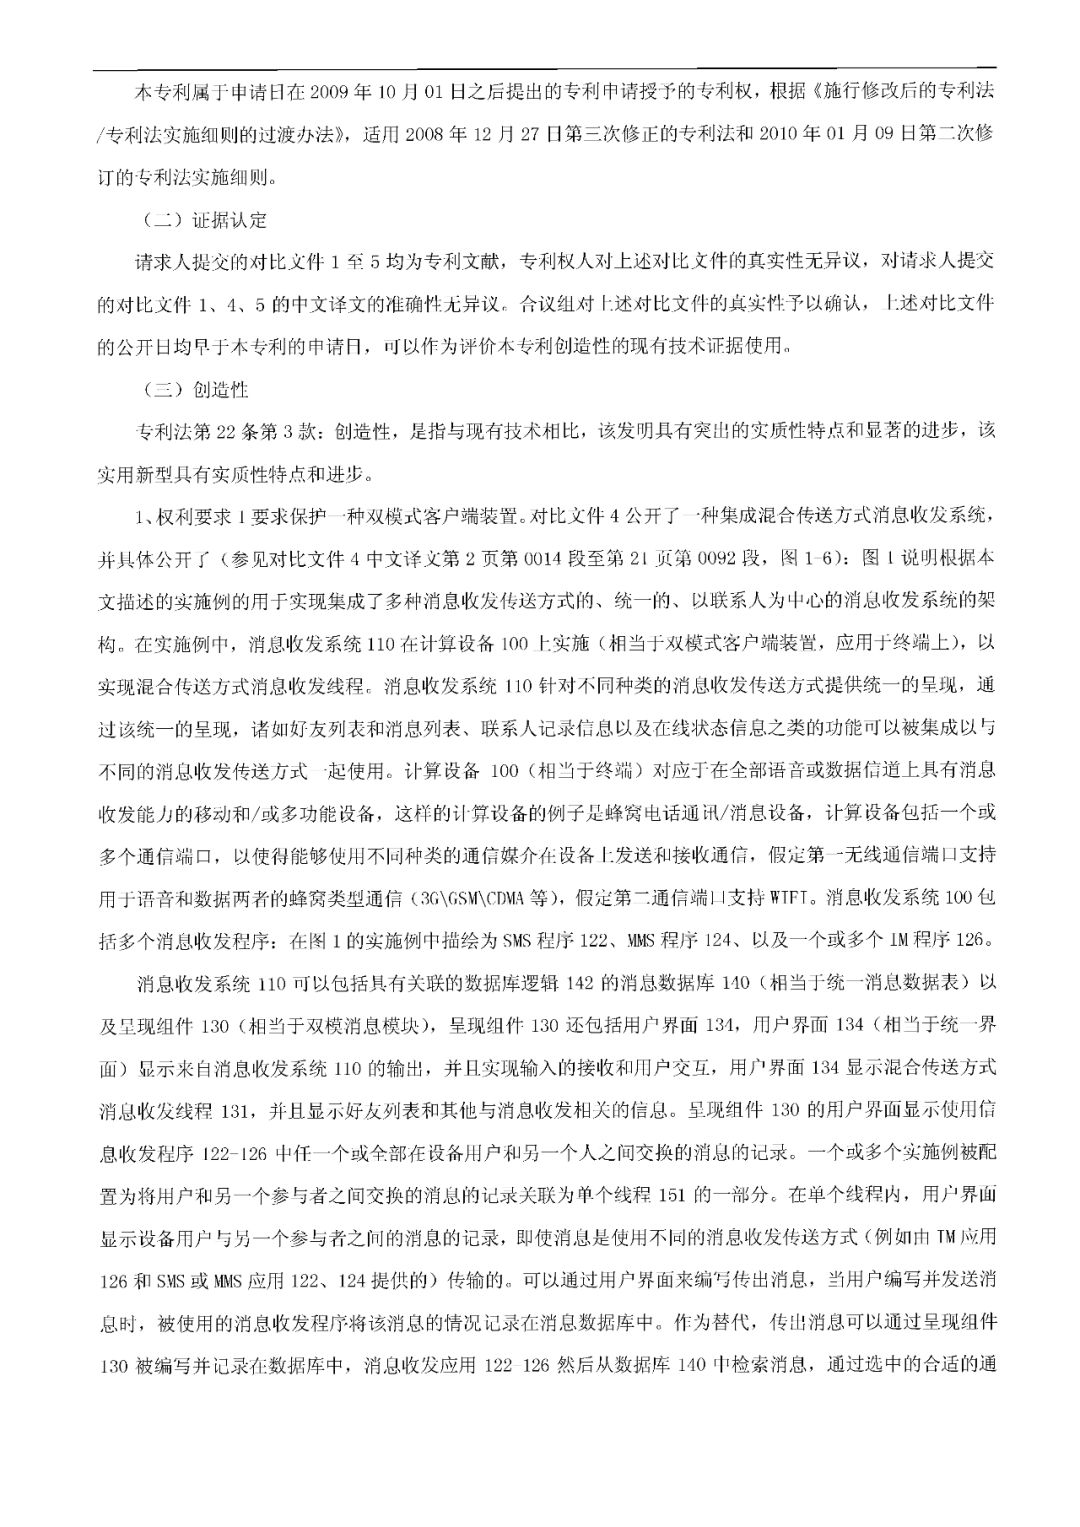 这位中国专利权人诉苹果公司的发明专利，竟然被无效了.....